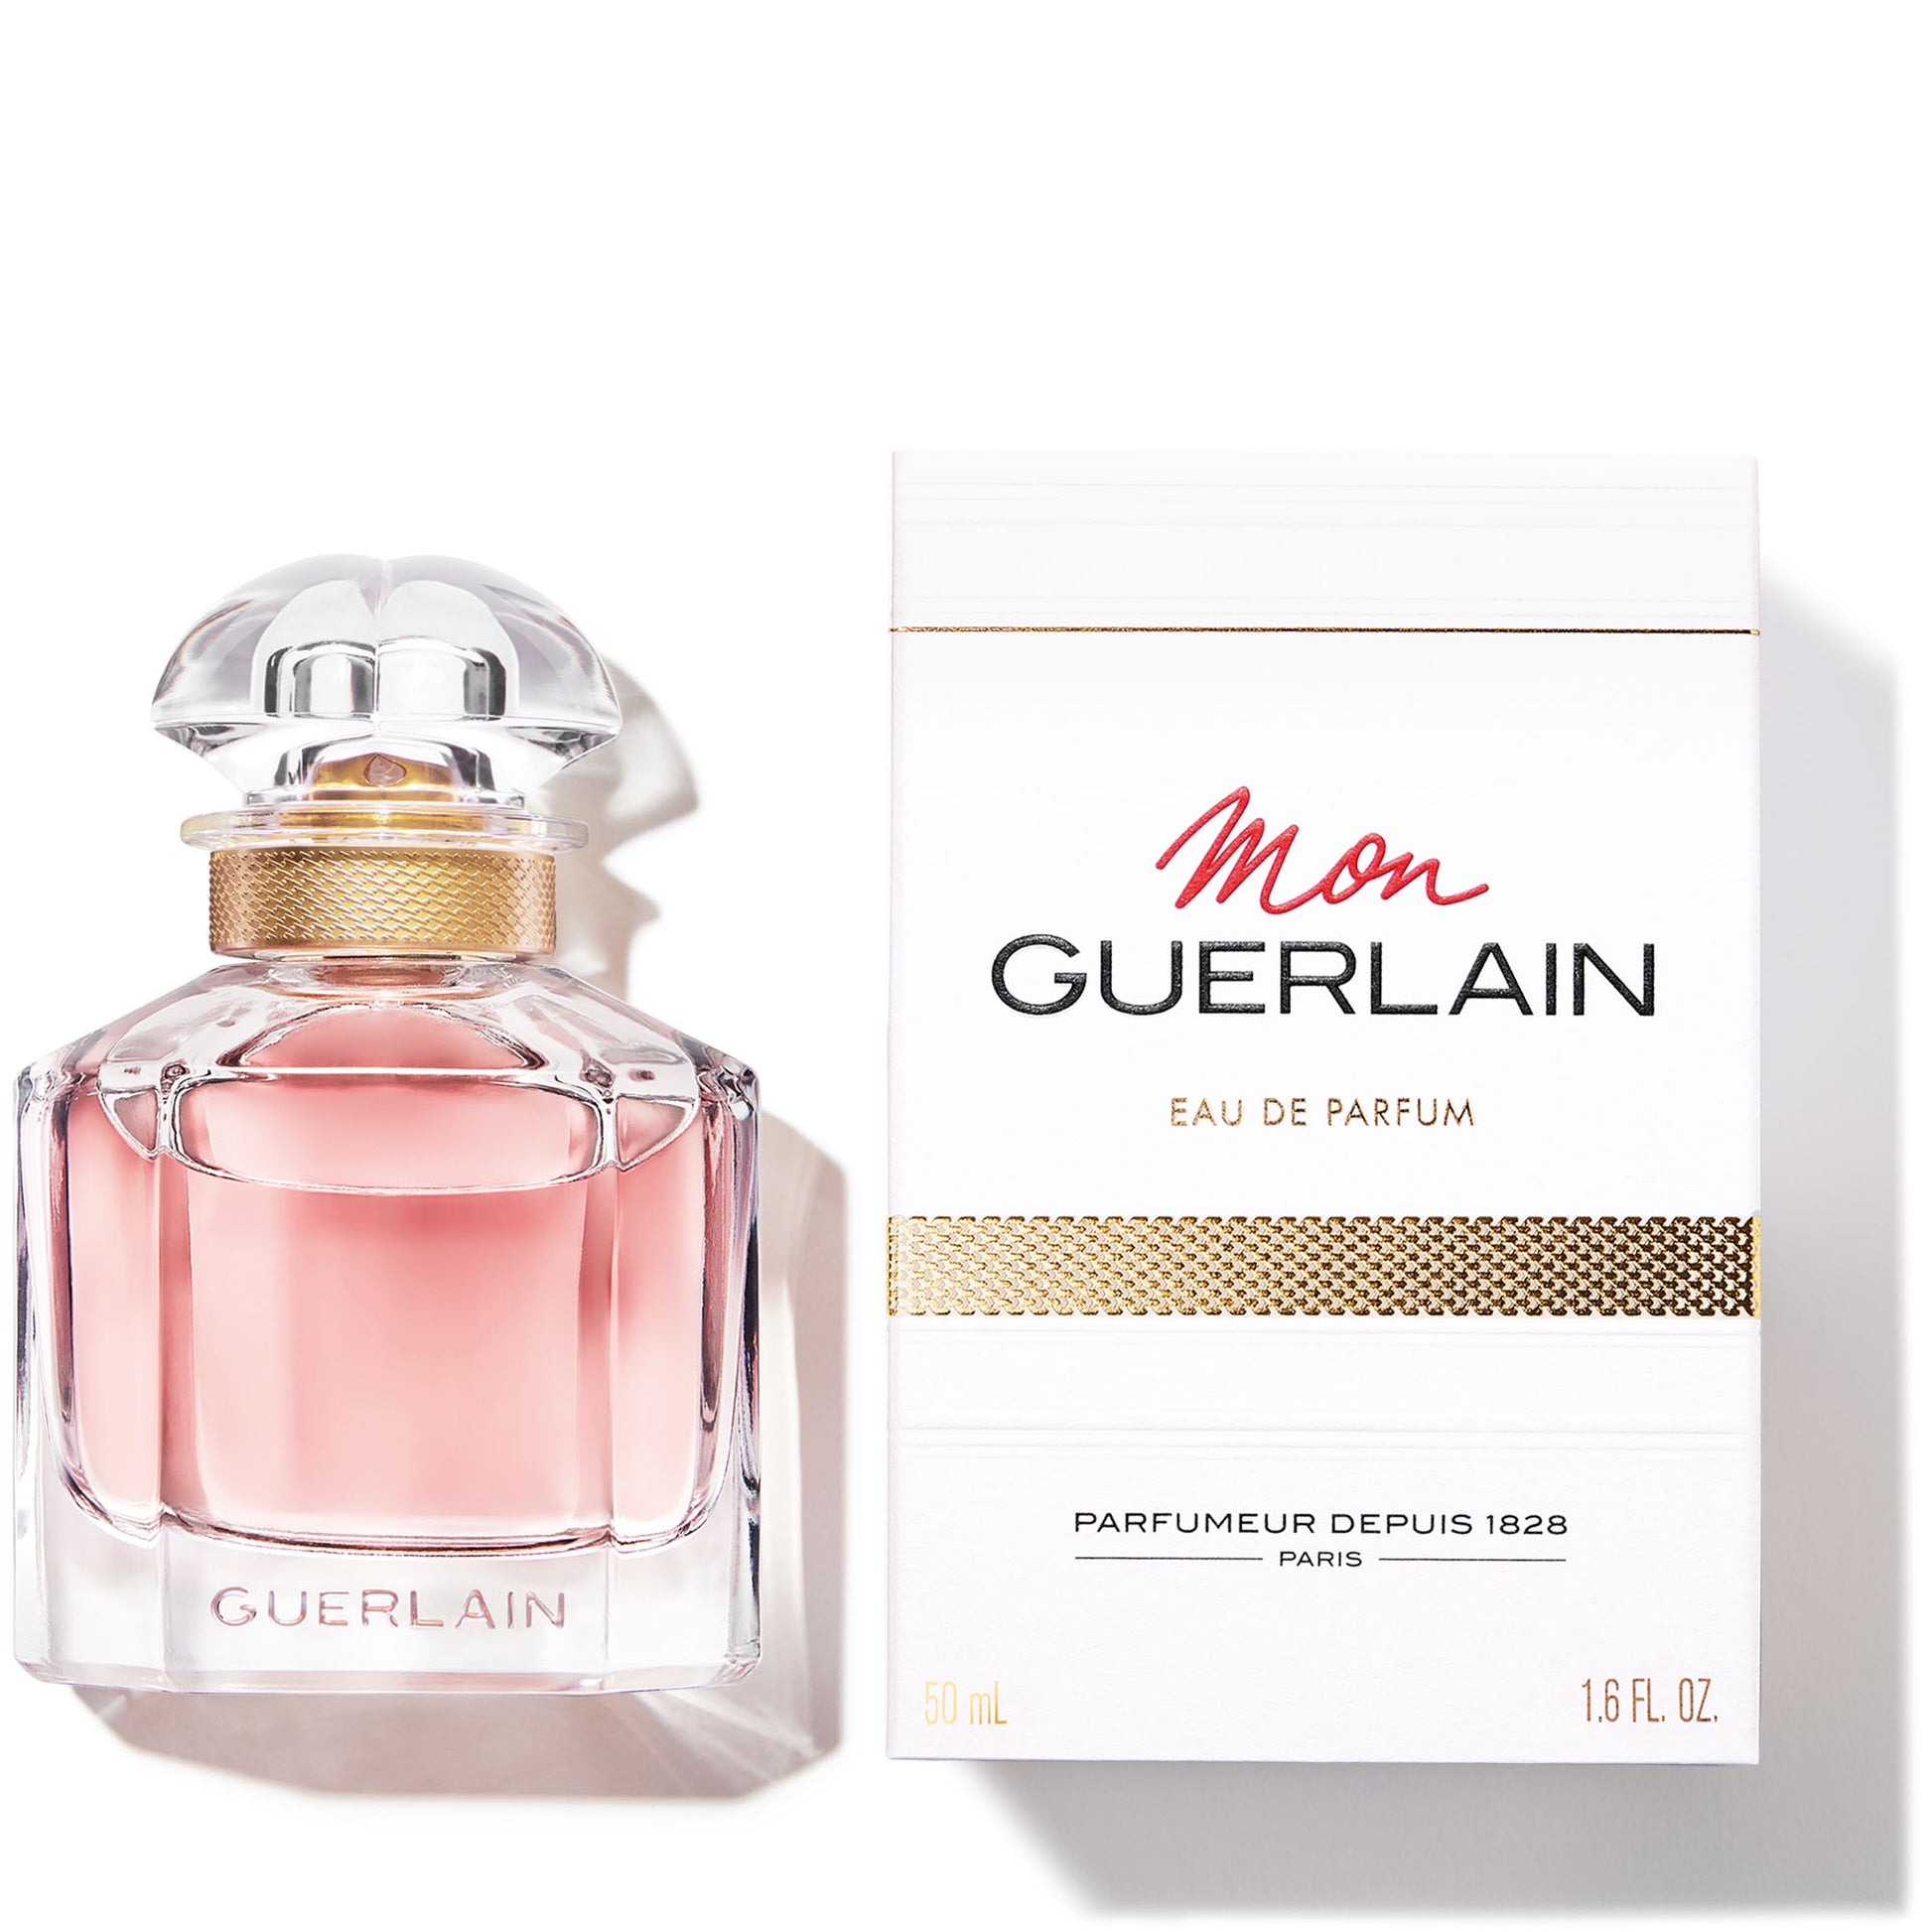 Mon Guerlain - Perfumería First